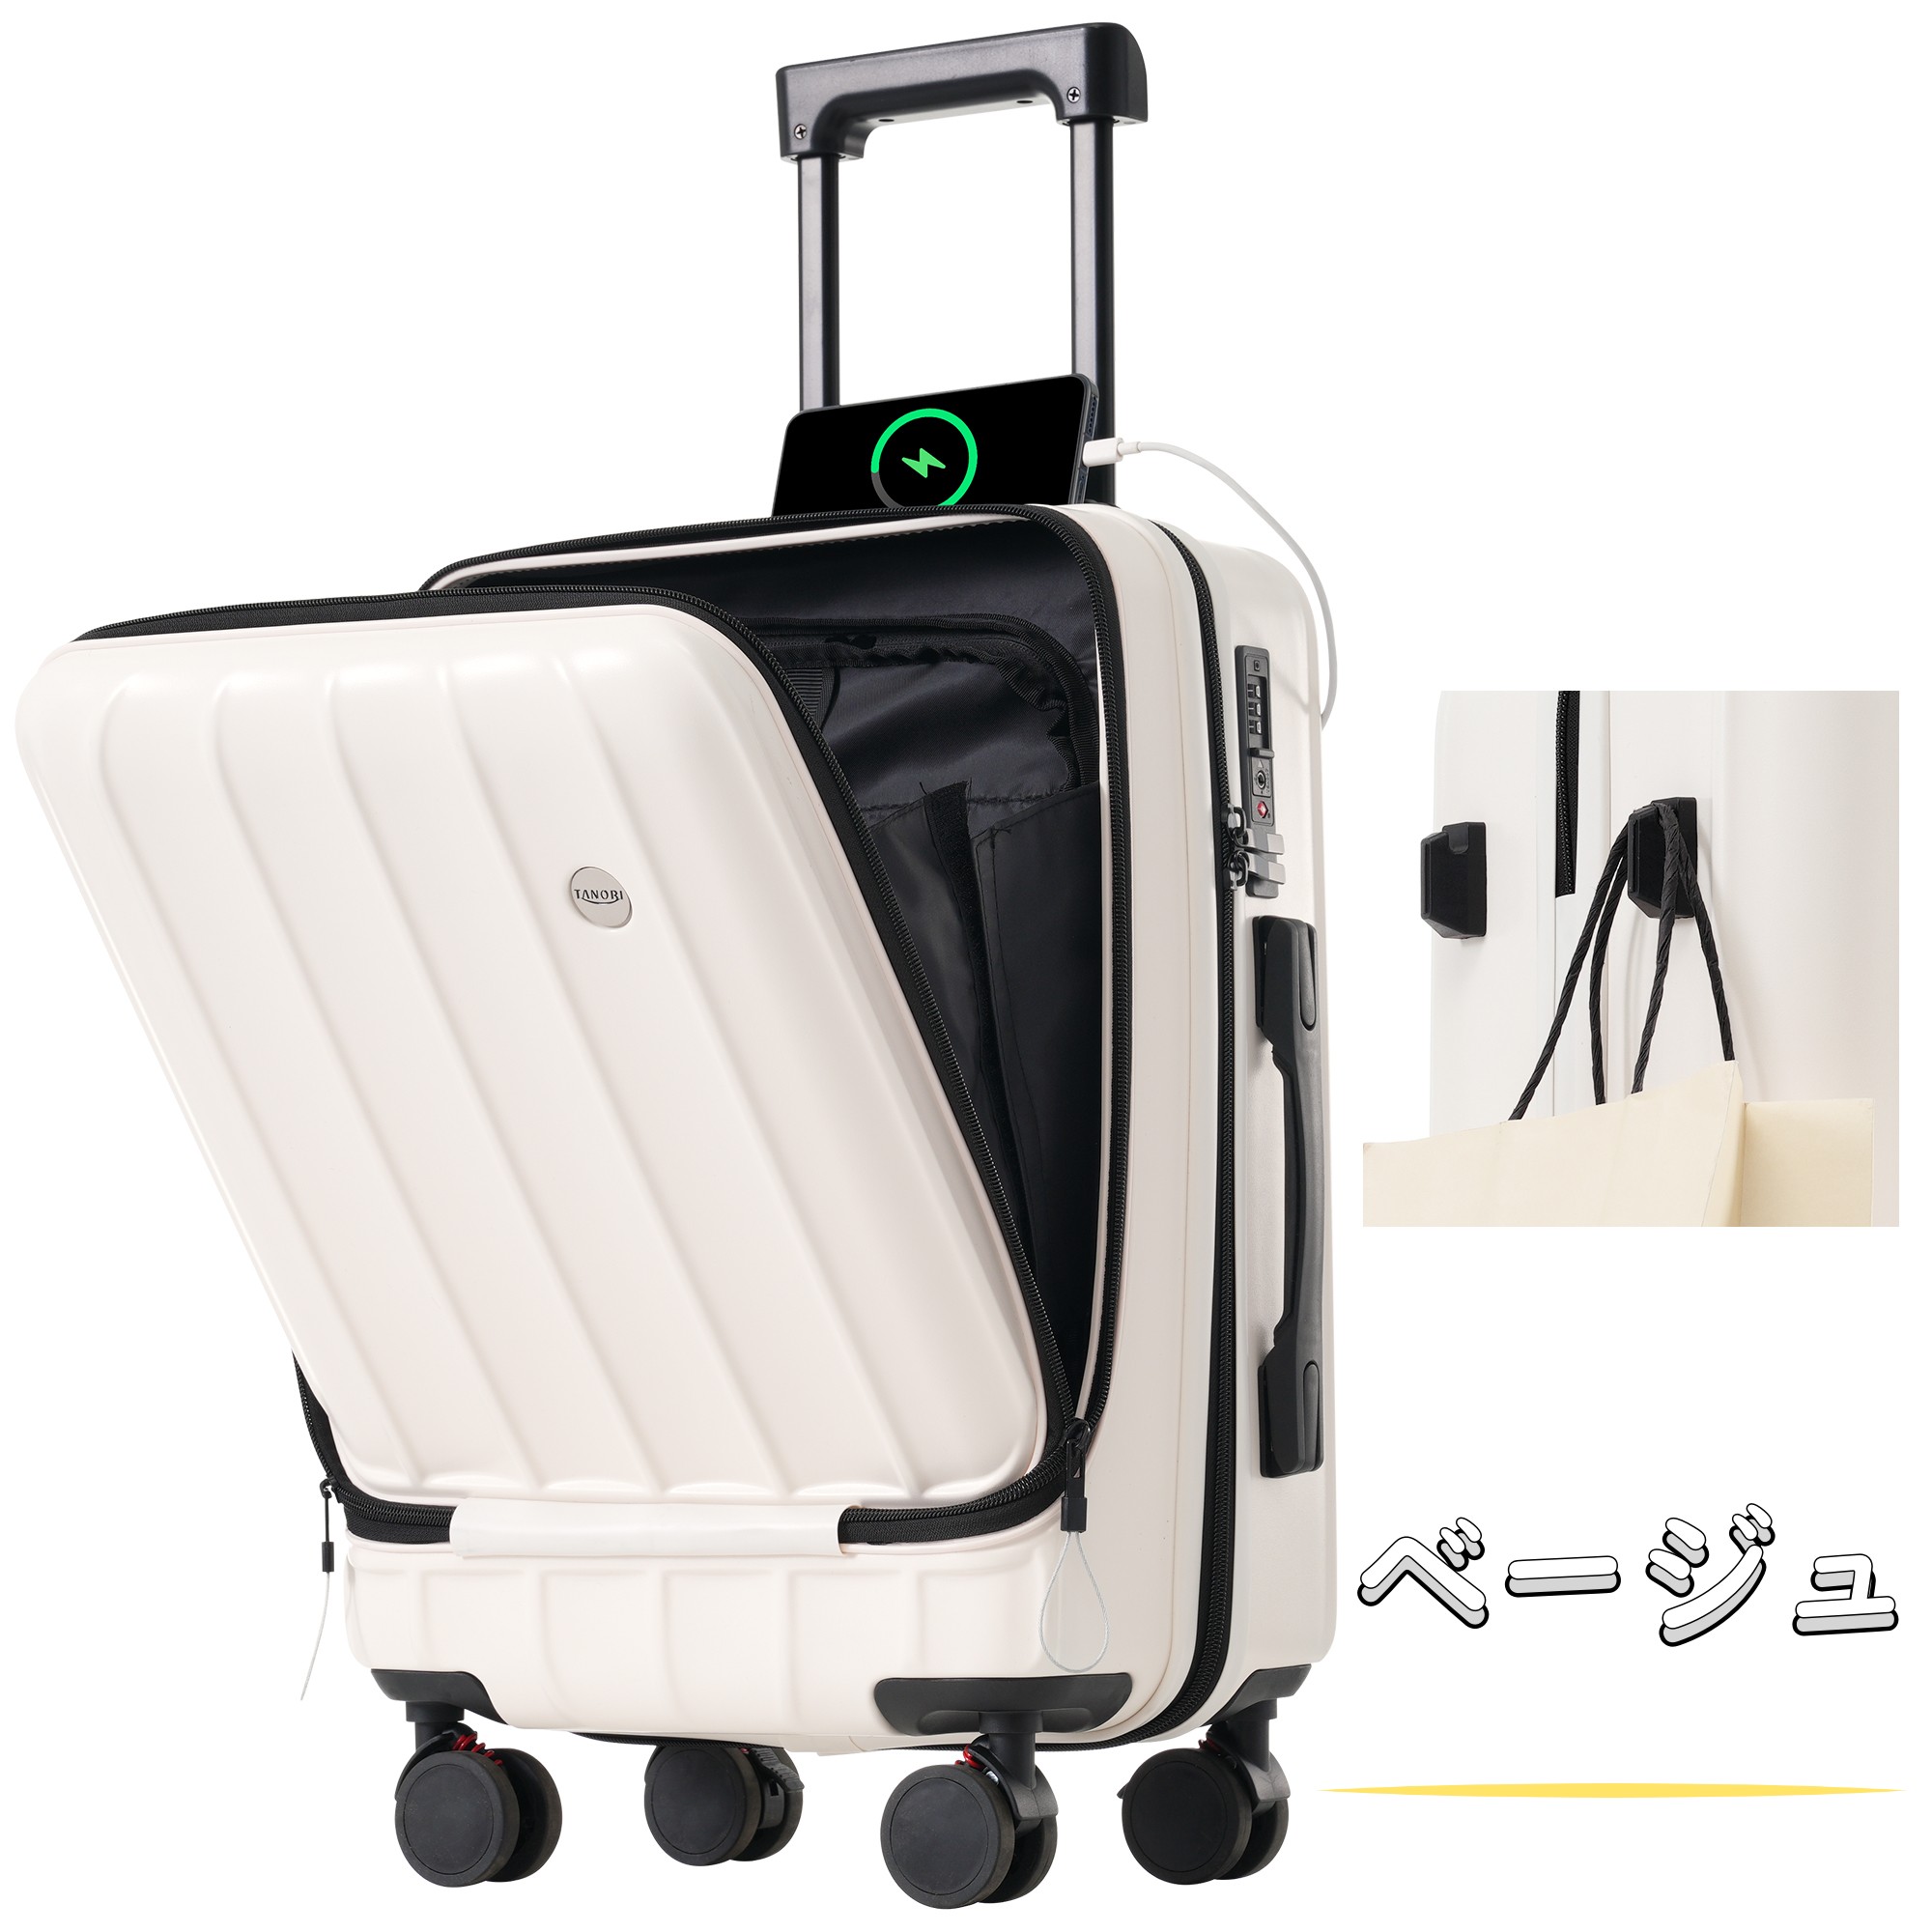 スーツケース sサイズ フロントオープン 機内持込み mサイズ lサイズ キャリーケース キャリーバッグ フック付き 超軽量 ストッパー付き  suitcase TANOBI